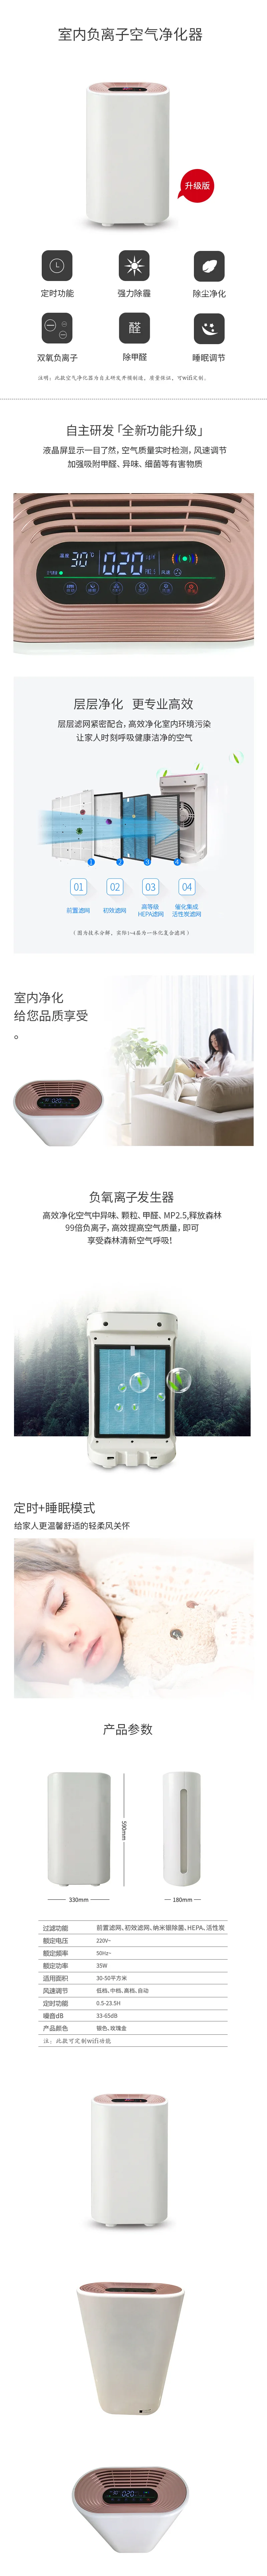 Xiaomi технология Электрический Очиститель Воздуха Hepa удаление формальдегида машина очистки воздуха очиститель воздуха домашний генератор отрицательных ионов